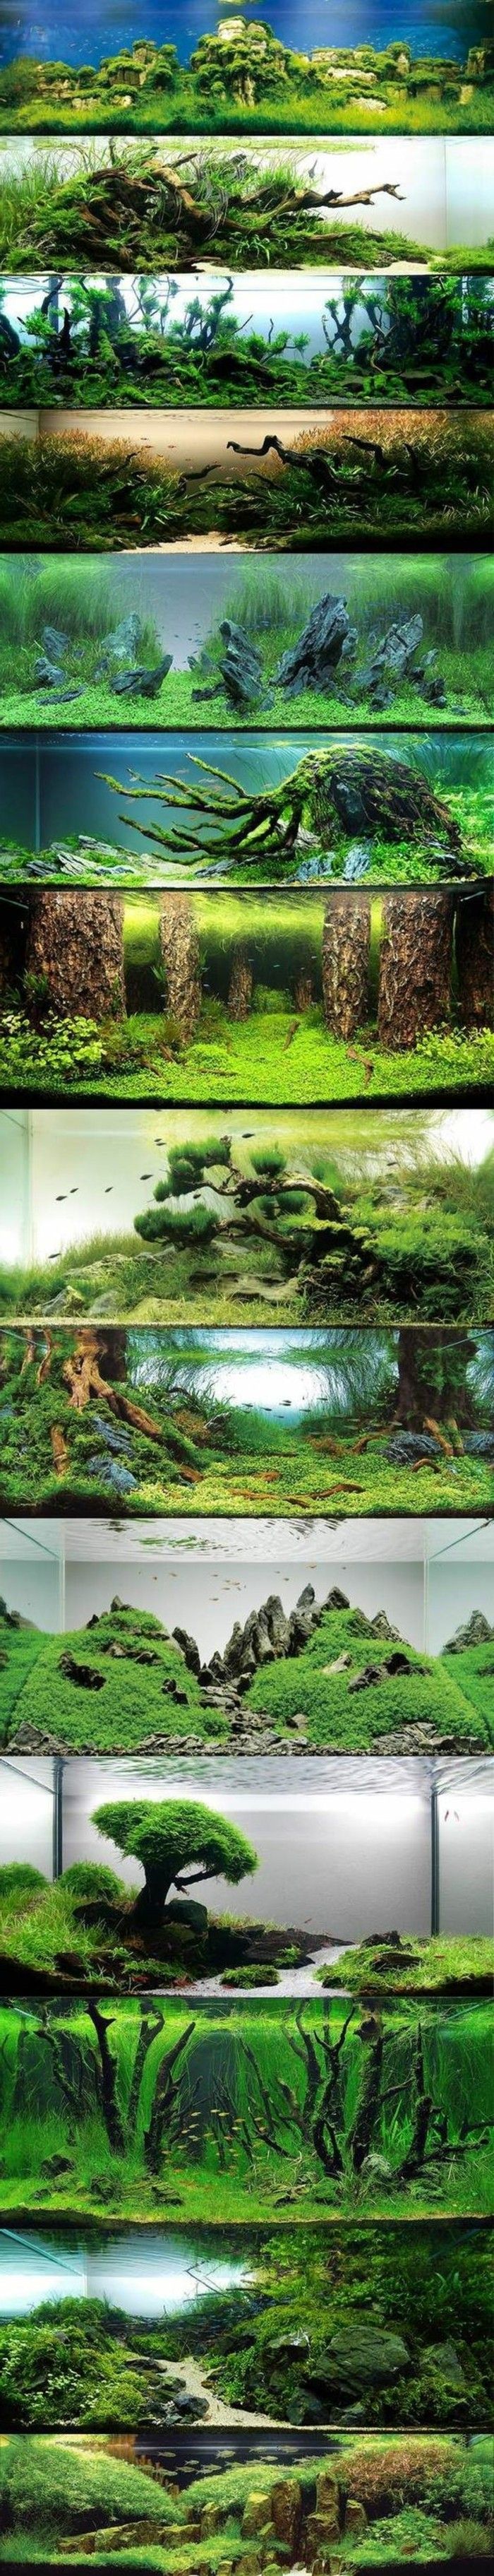 acquario-design-best-idee-foto d'acqua alghe collage-the-world-con-